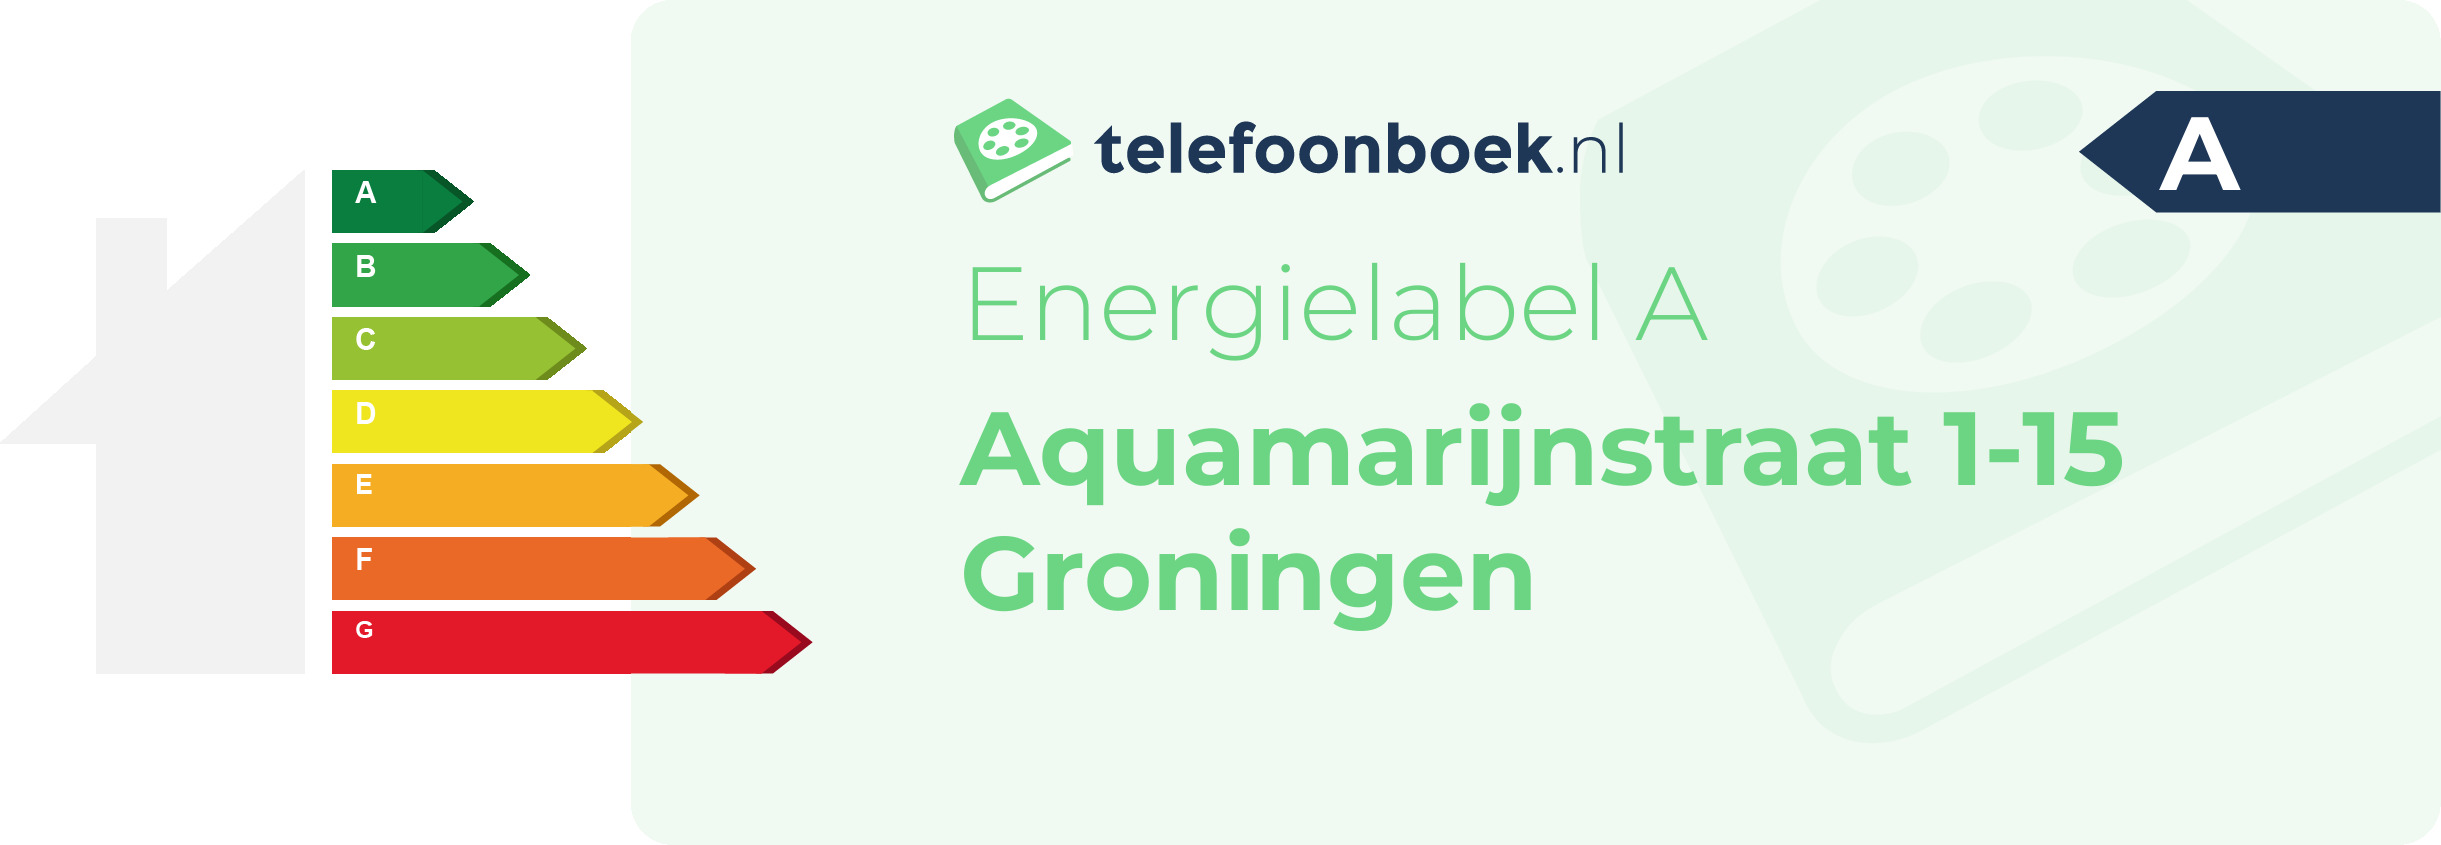 Energielabel Aquamarijnstraat 1-15 Groningen